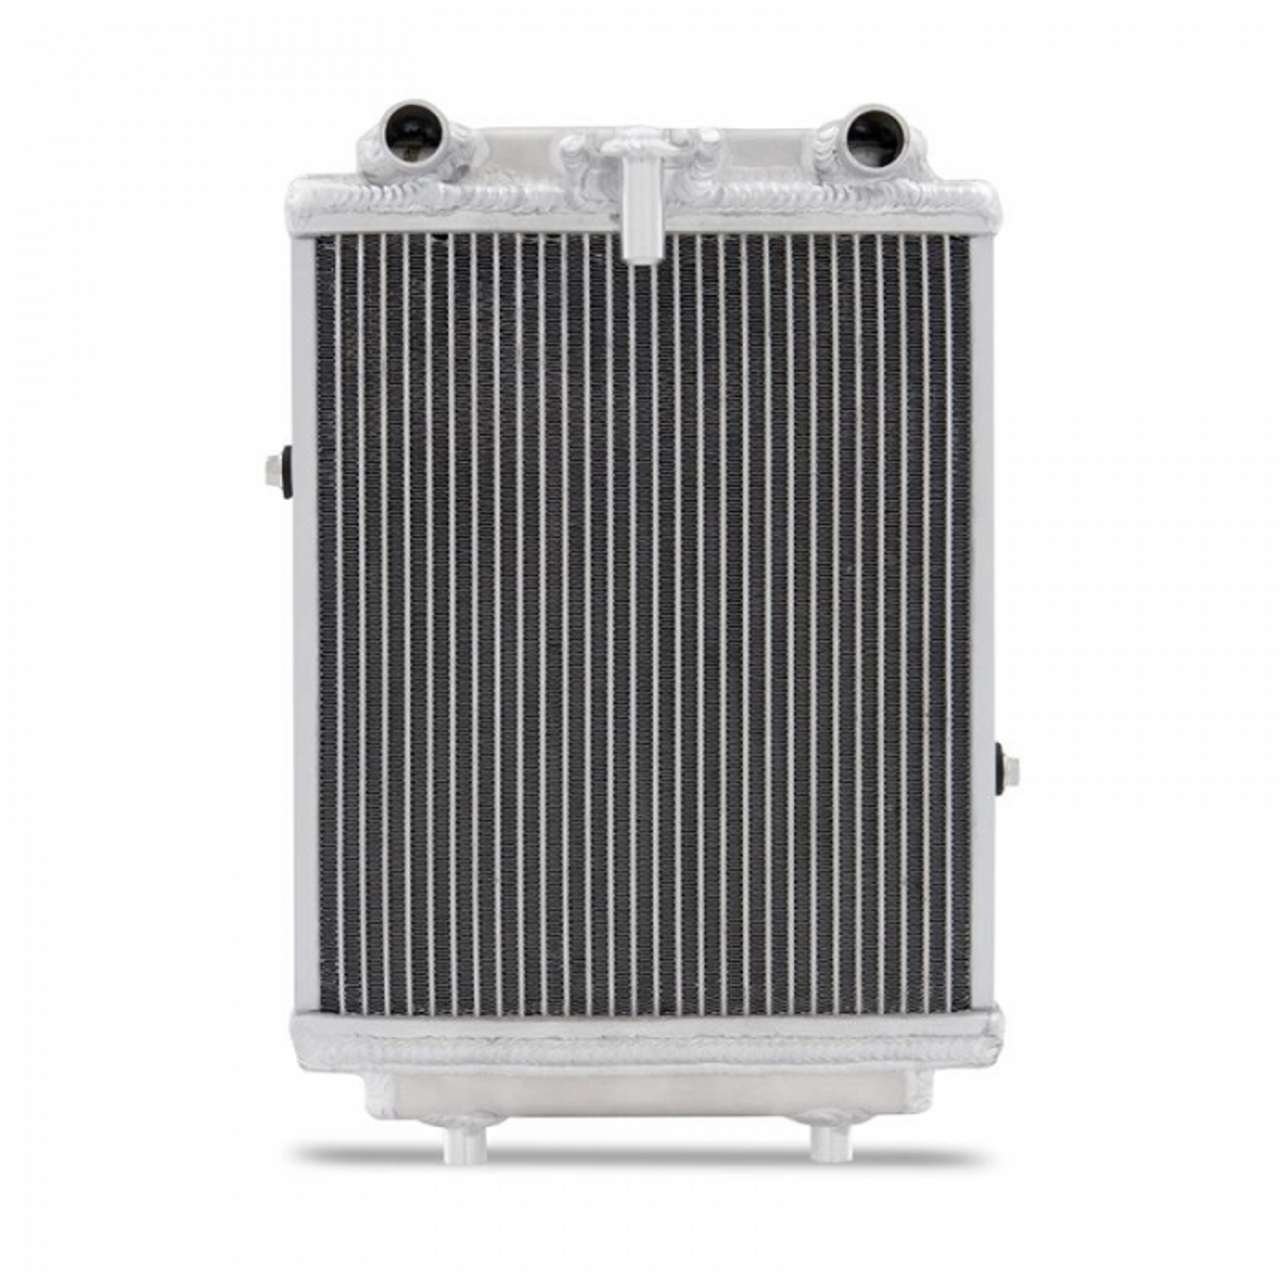 Mishimoto Performance Aux DSG Cooler / Heat Exchanger for MK7 Golf R, 8V S3 & 8S TTS